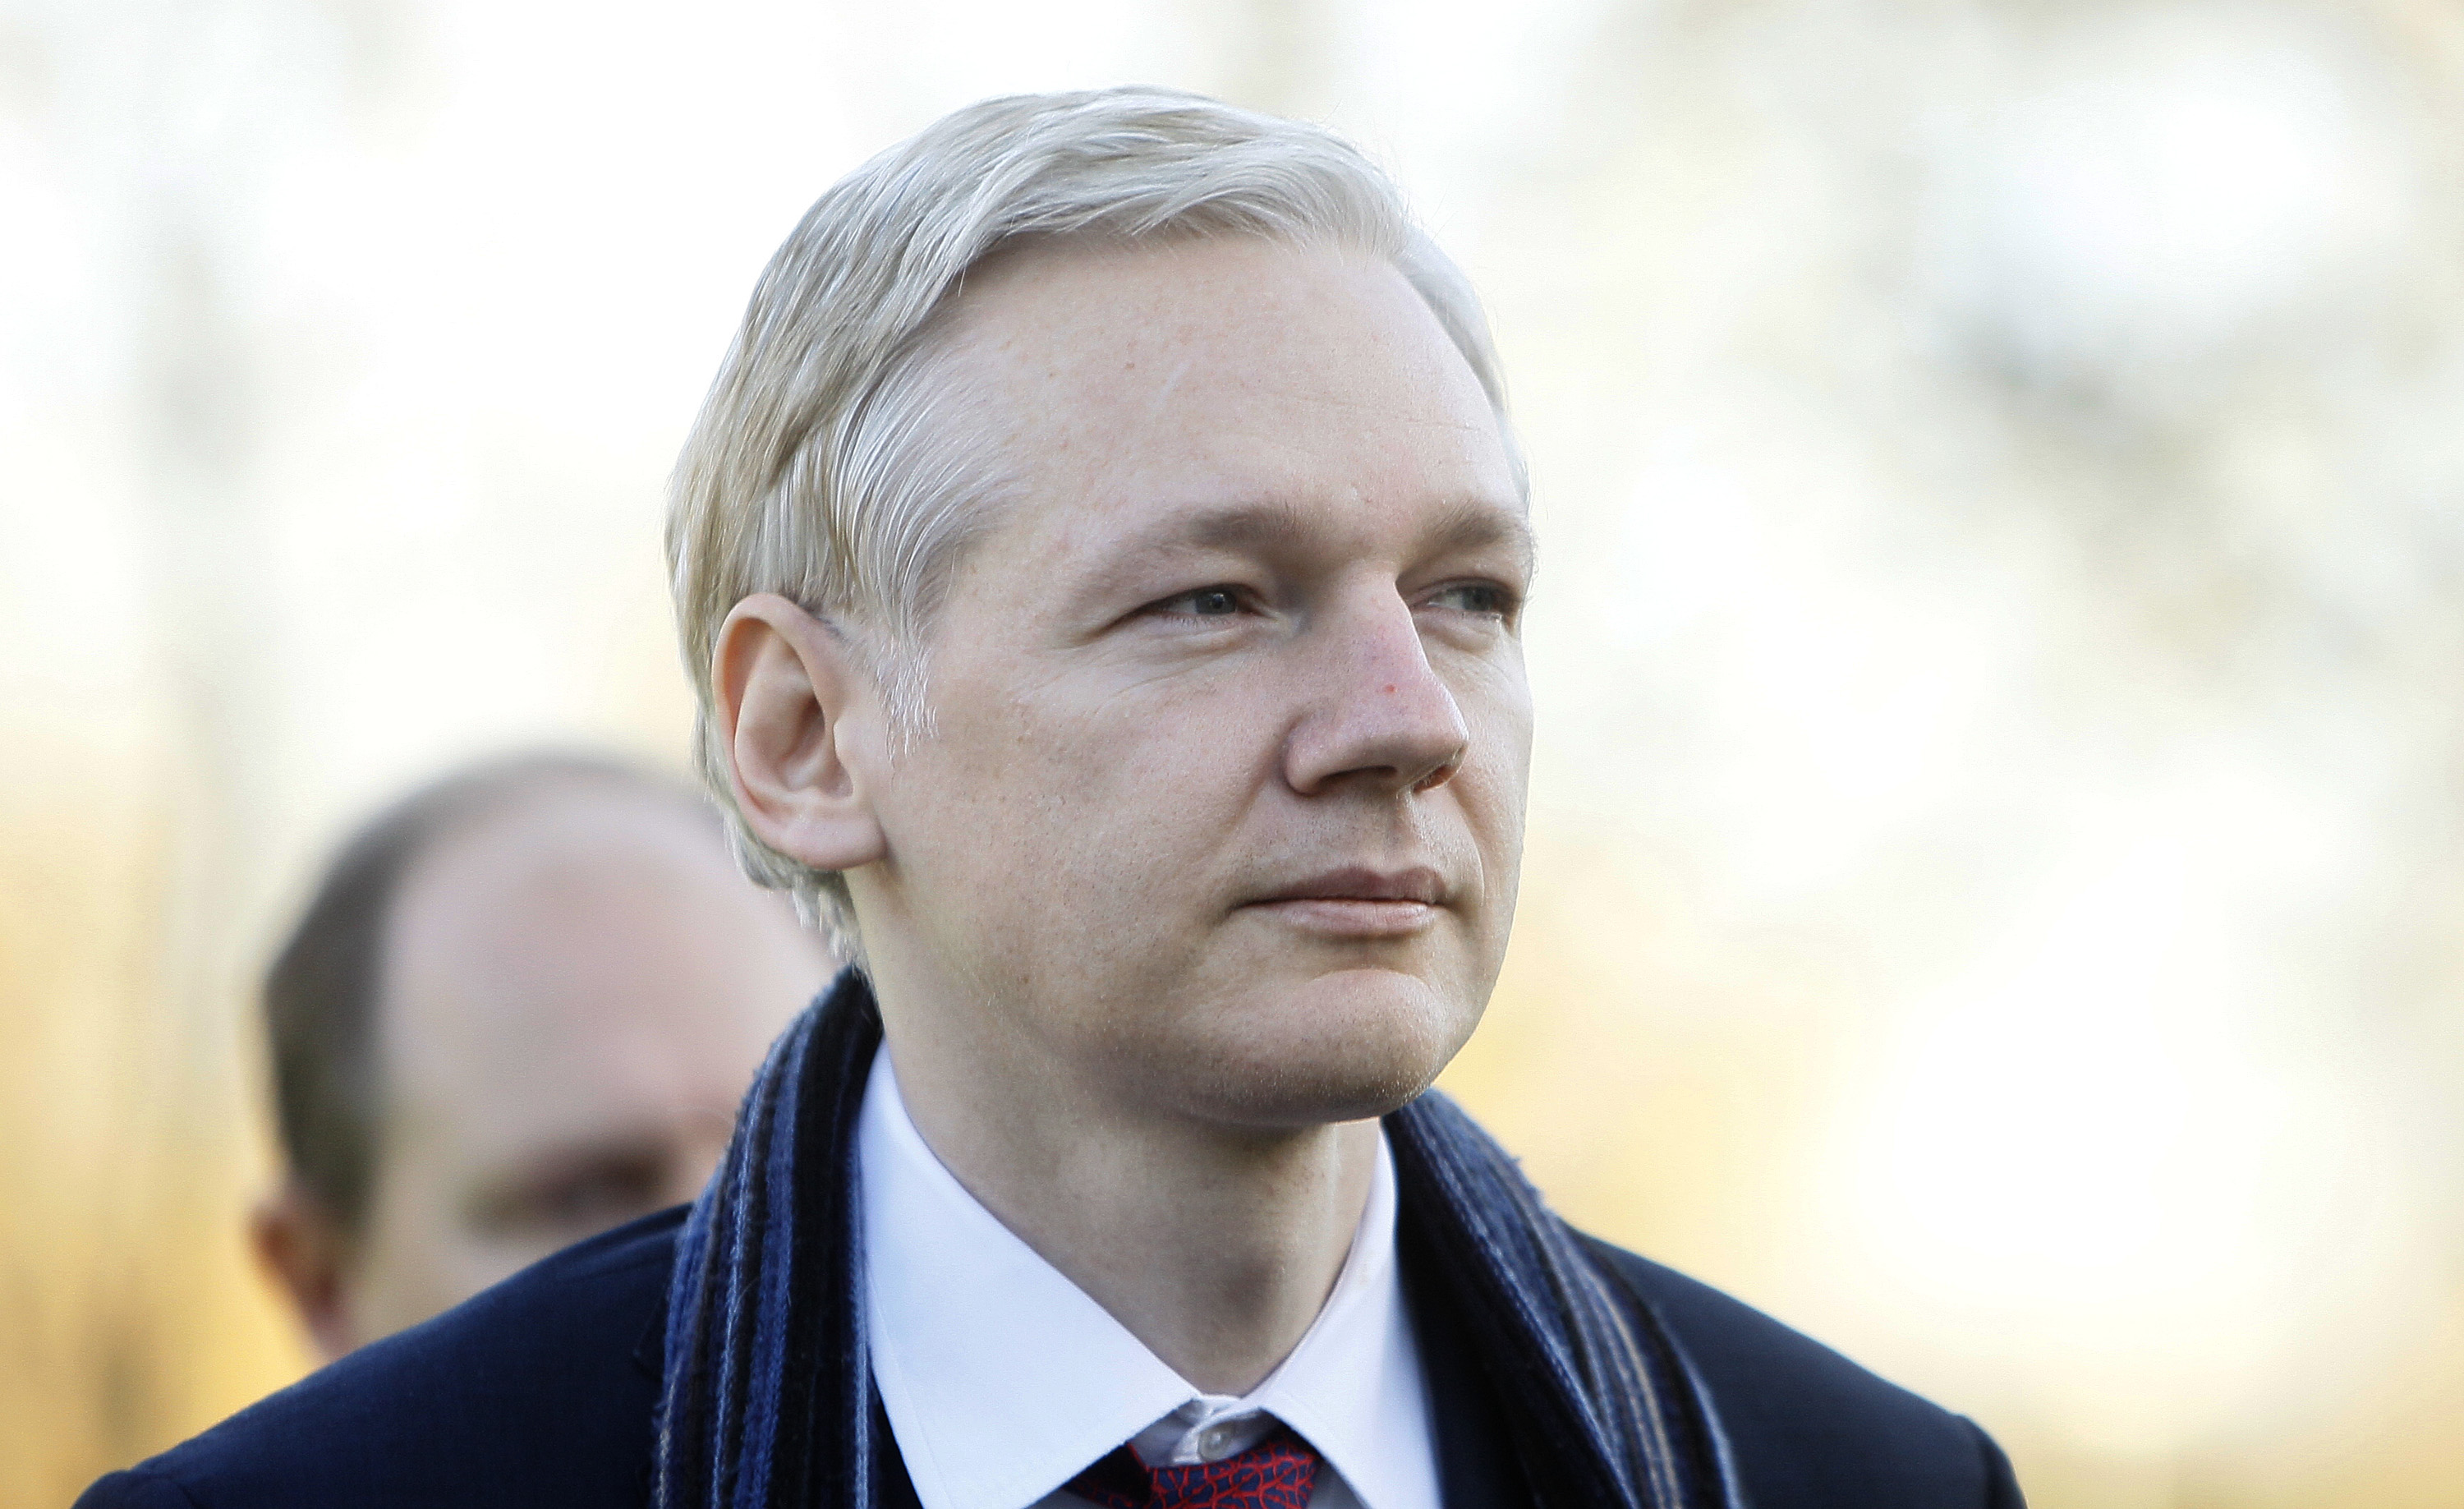 Ett tänkbart scenario är att en åklagare sedan beslutar anhålla Julian Assange. Han förvaras sedan någonstans i Sverige, frihetsberövad...